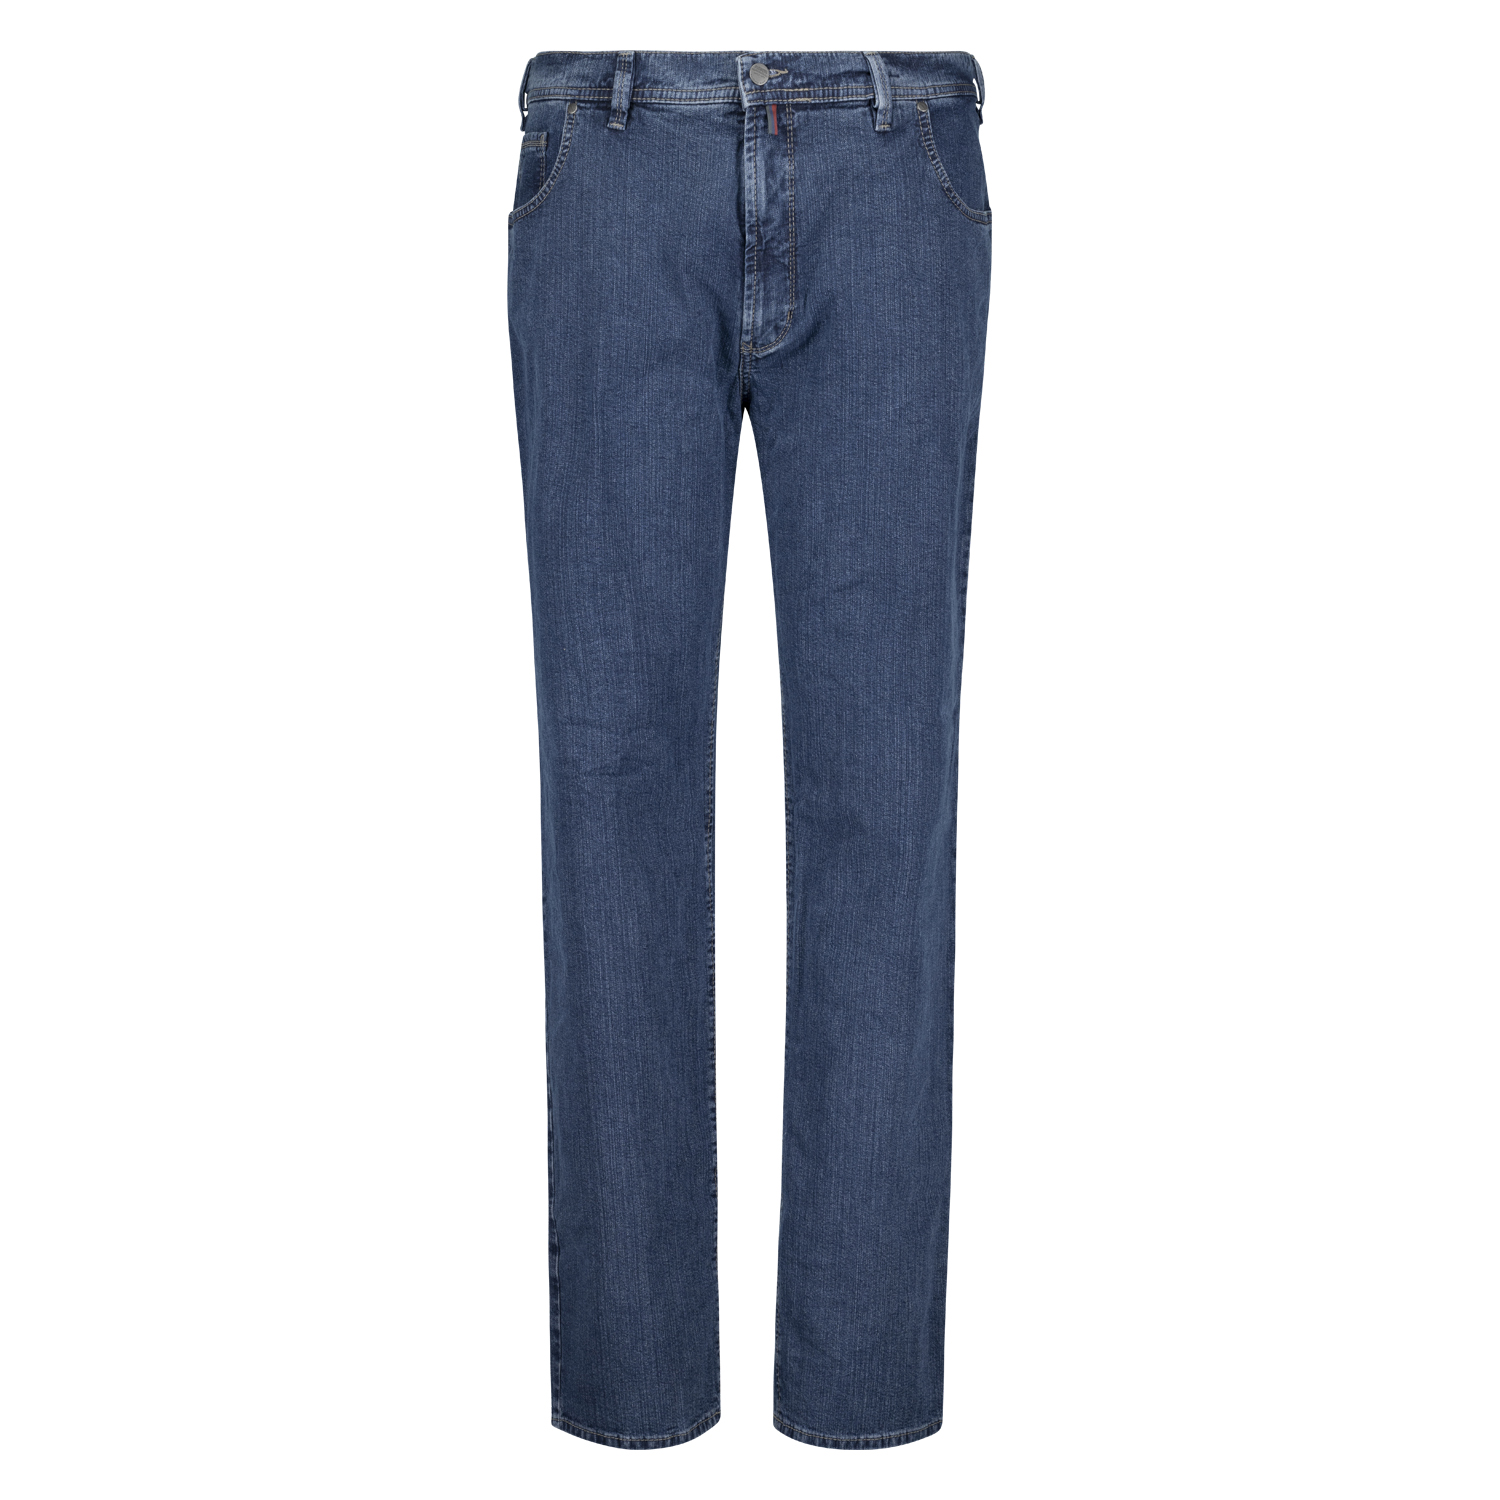 5-Pocket Jeans Herren Modell "Peter" von Pioneer in Bauchgrößen 59 - 85 blue stonewash